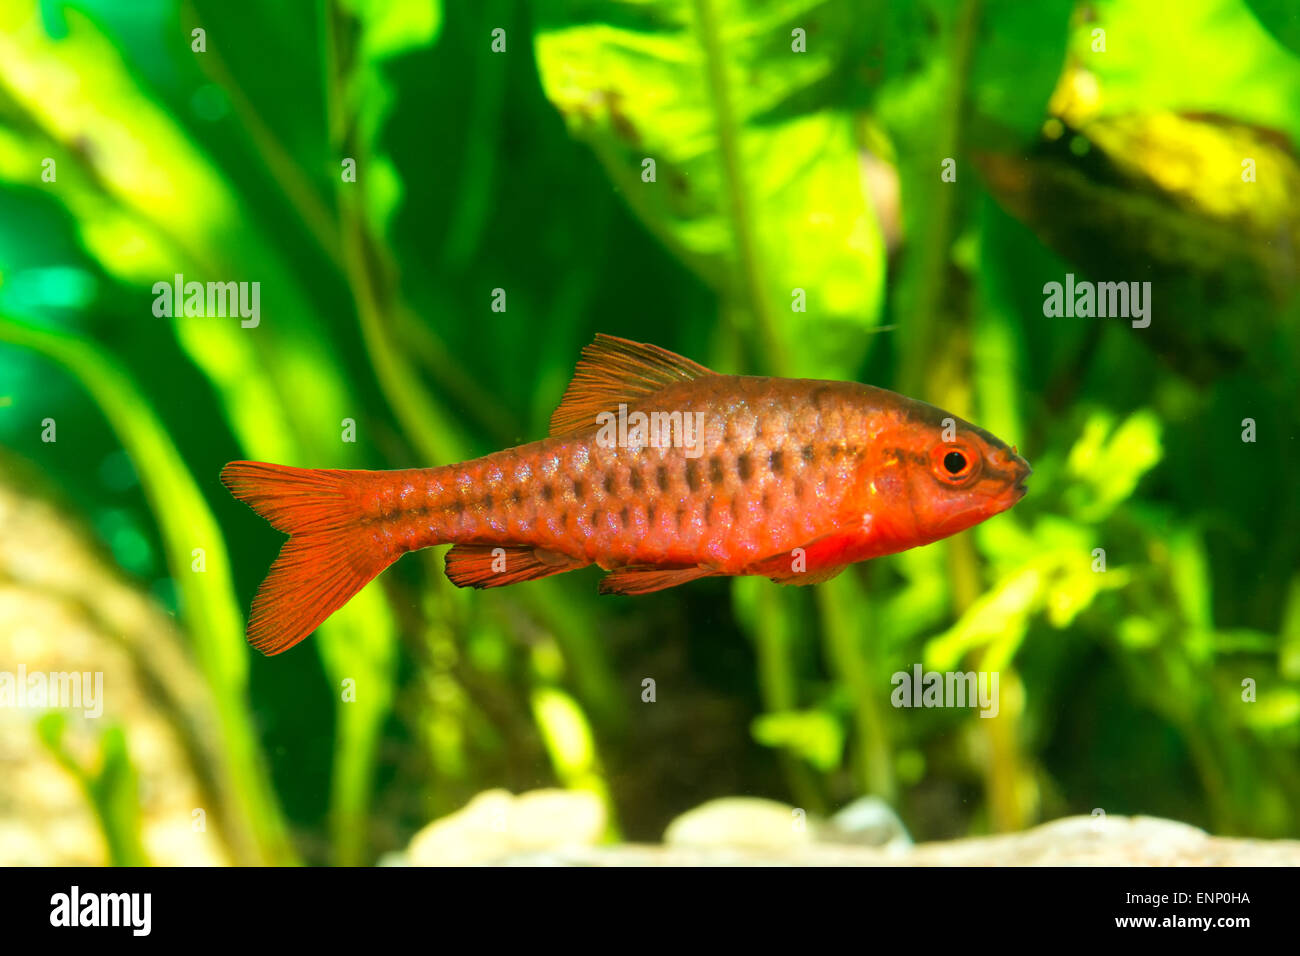 Nice aquarium barb fish from genus Puntius. Stock Photo